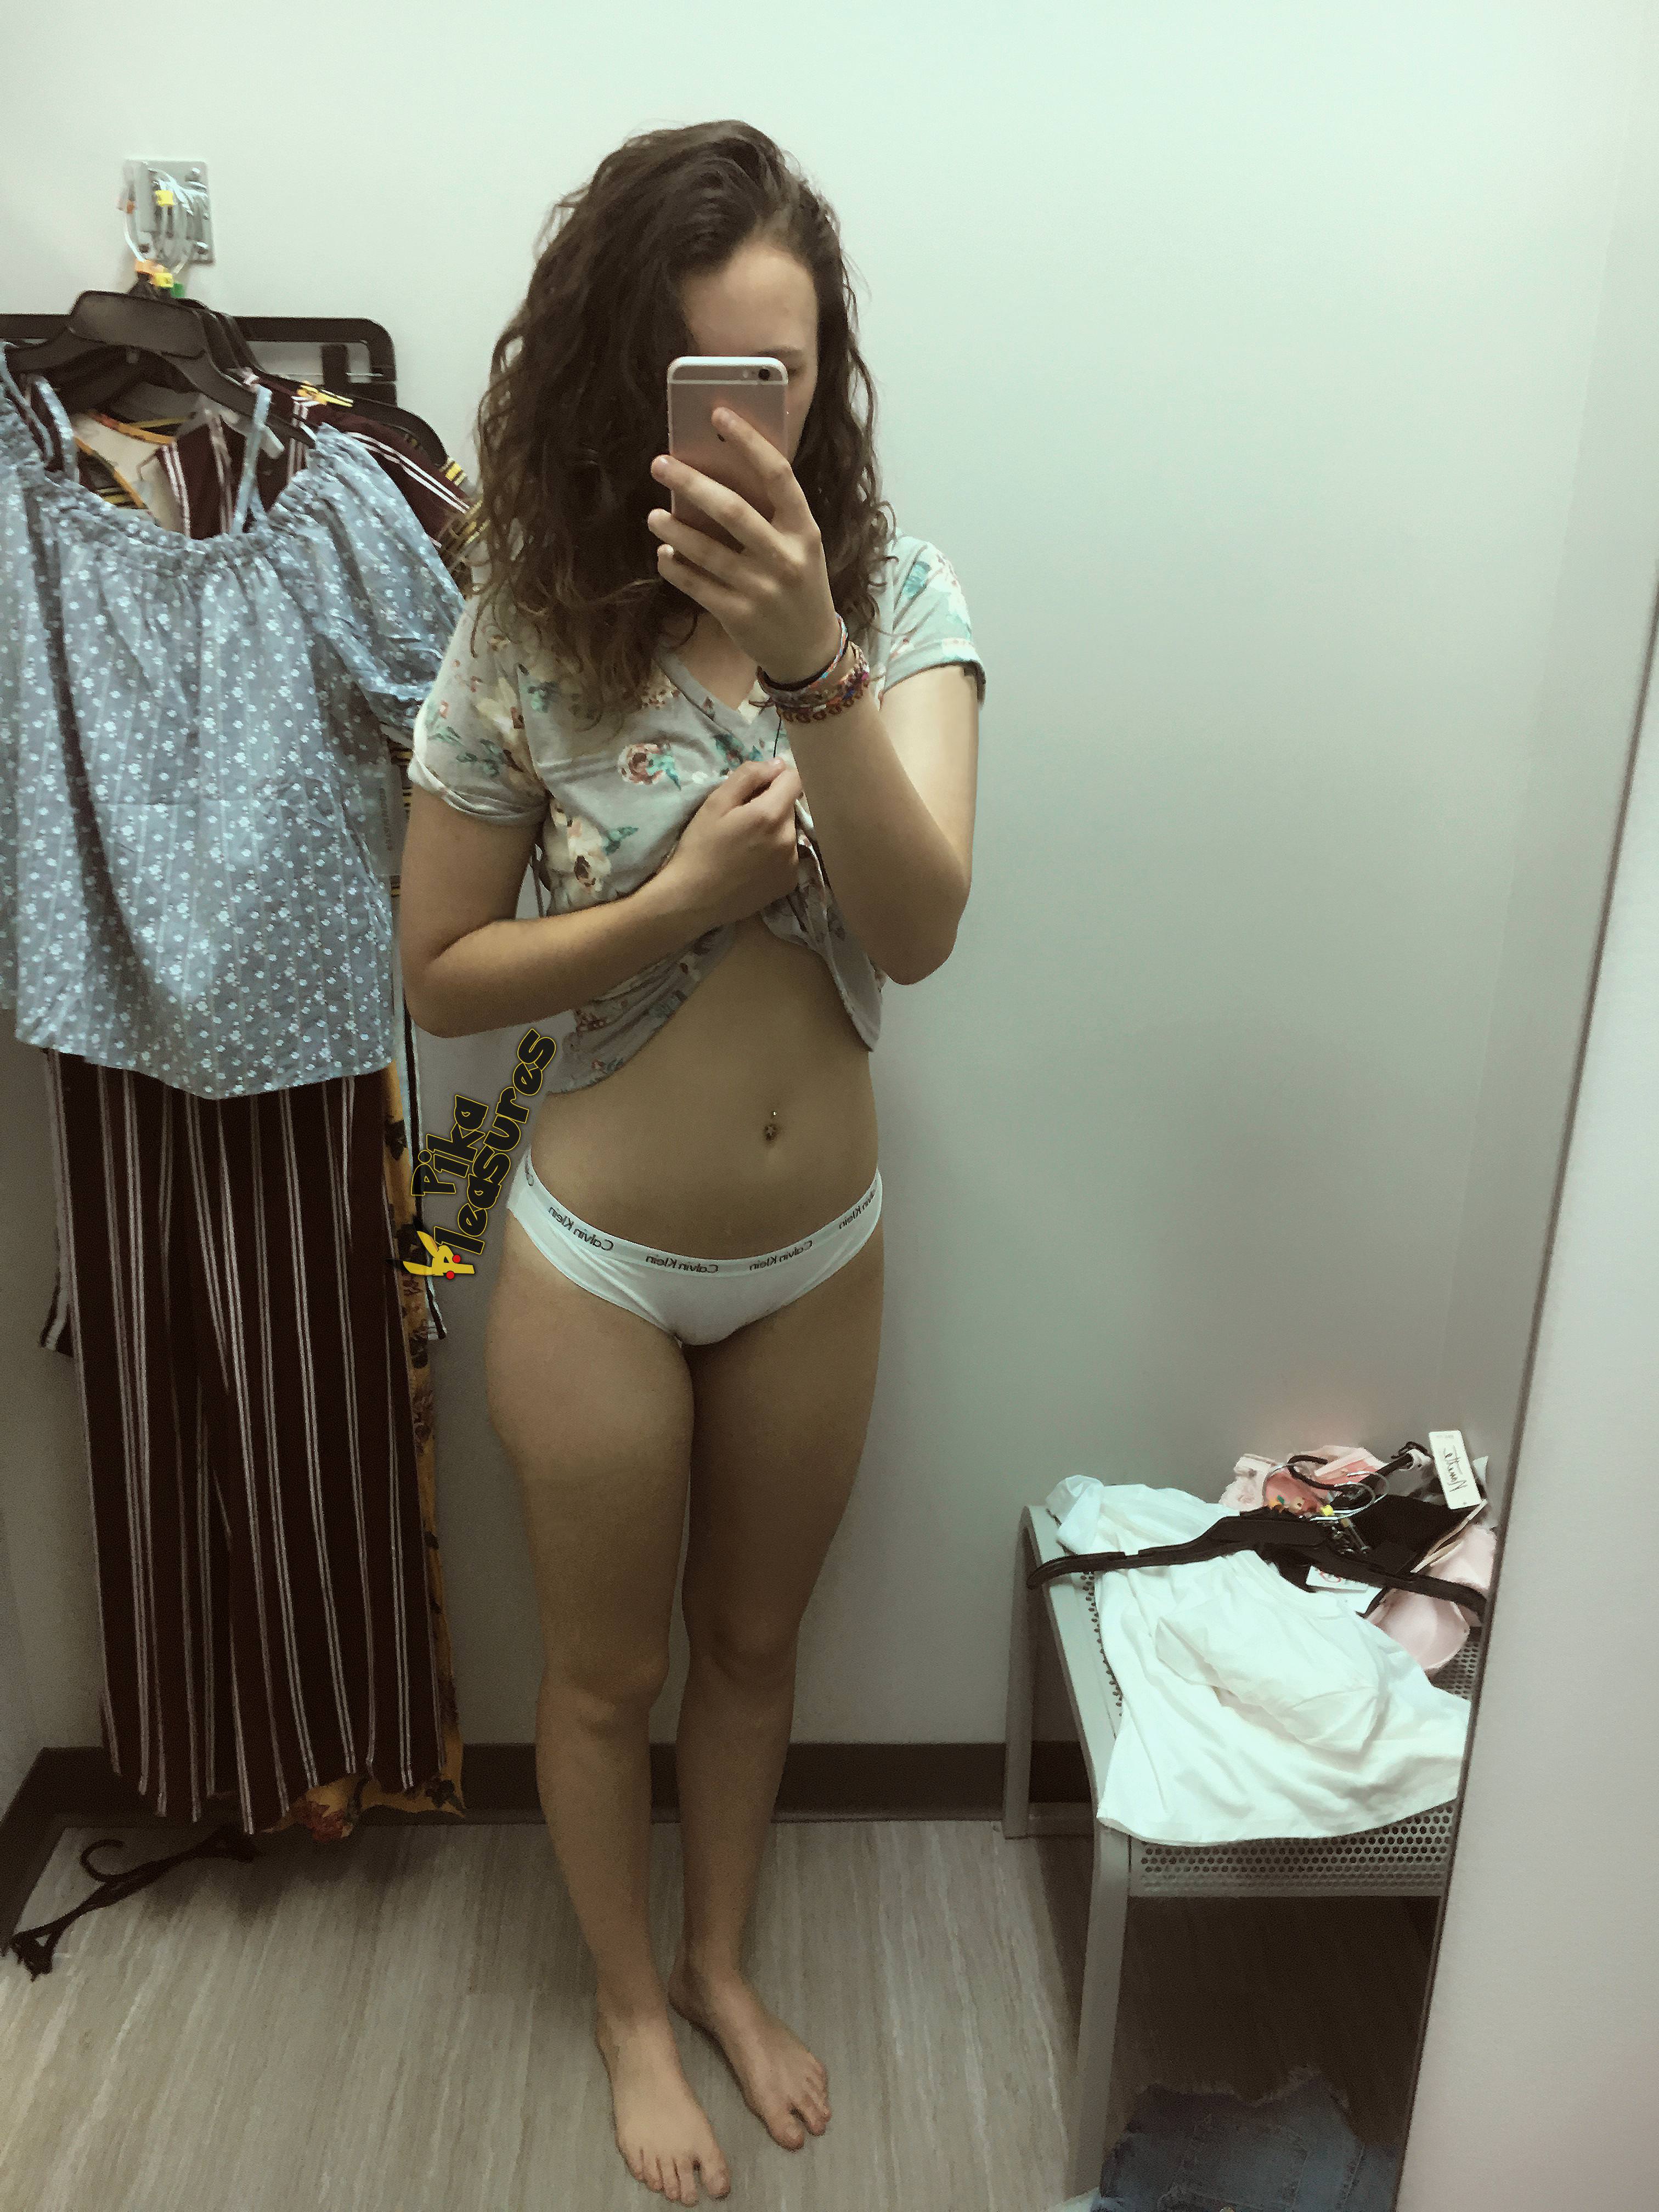 Dressing room panties